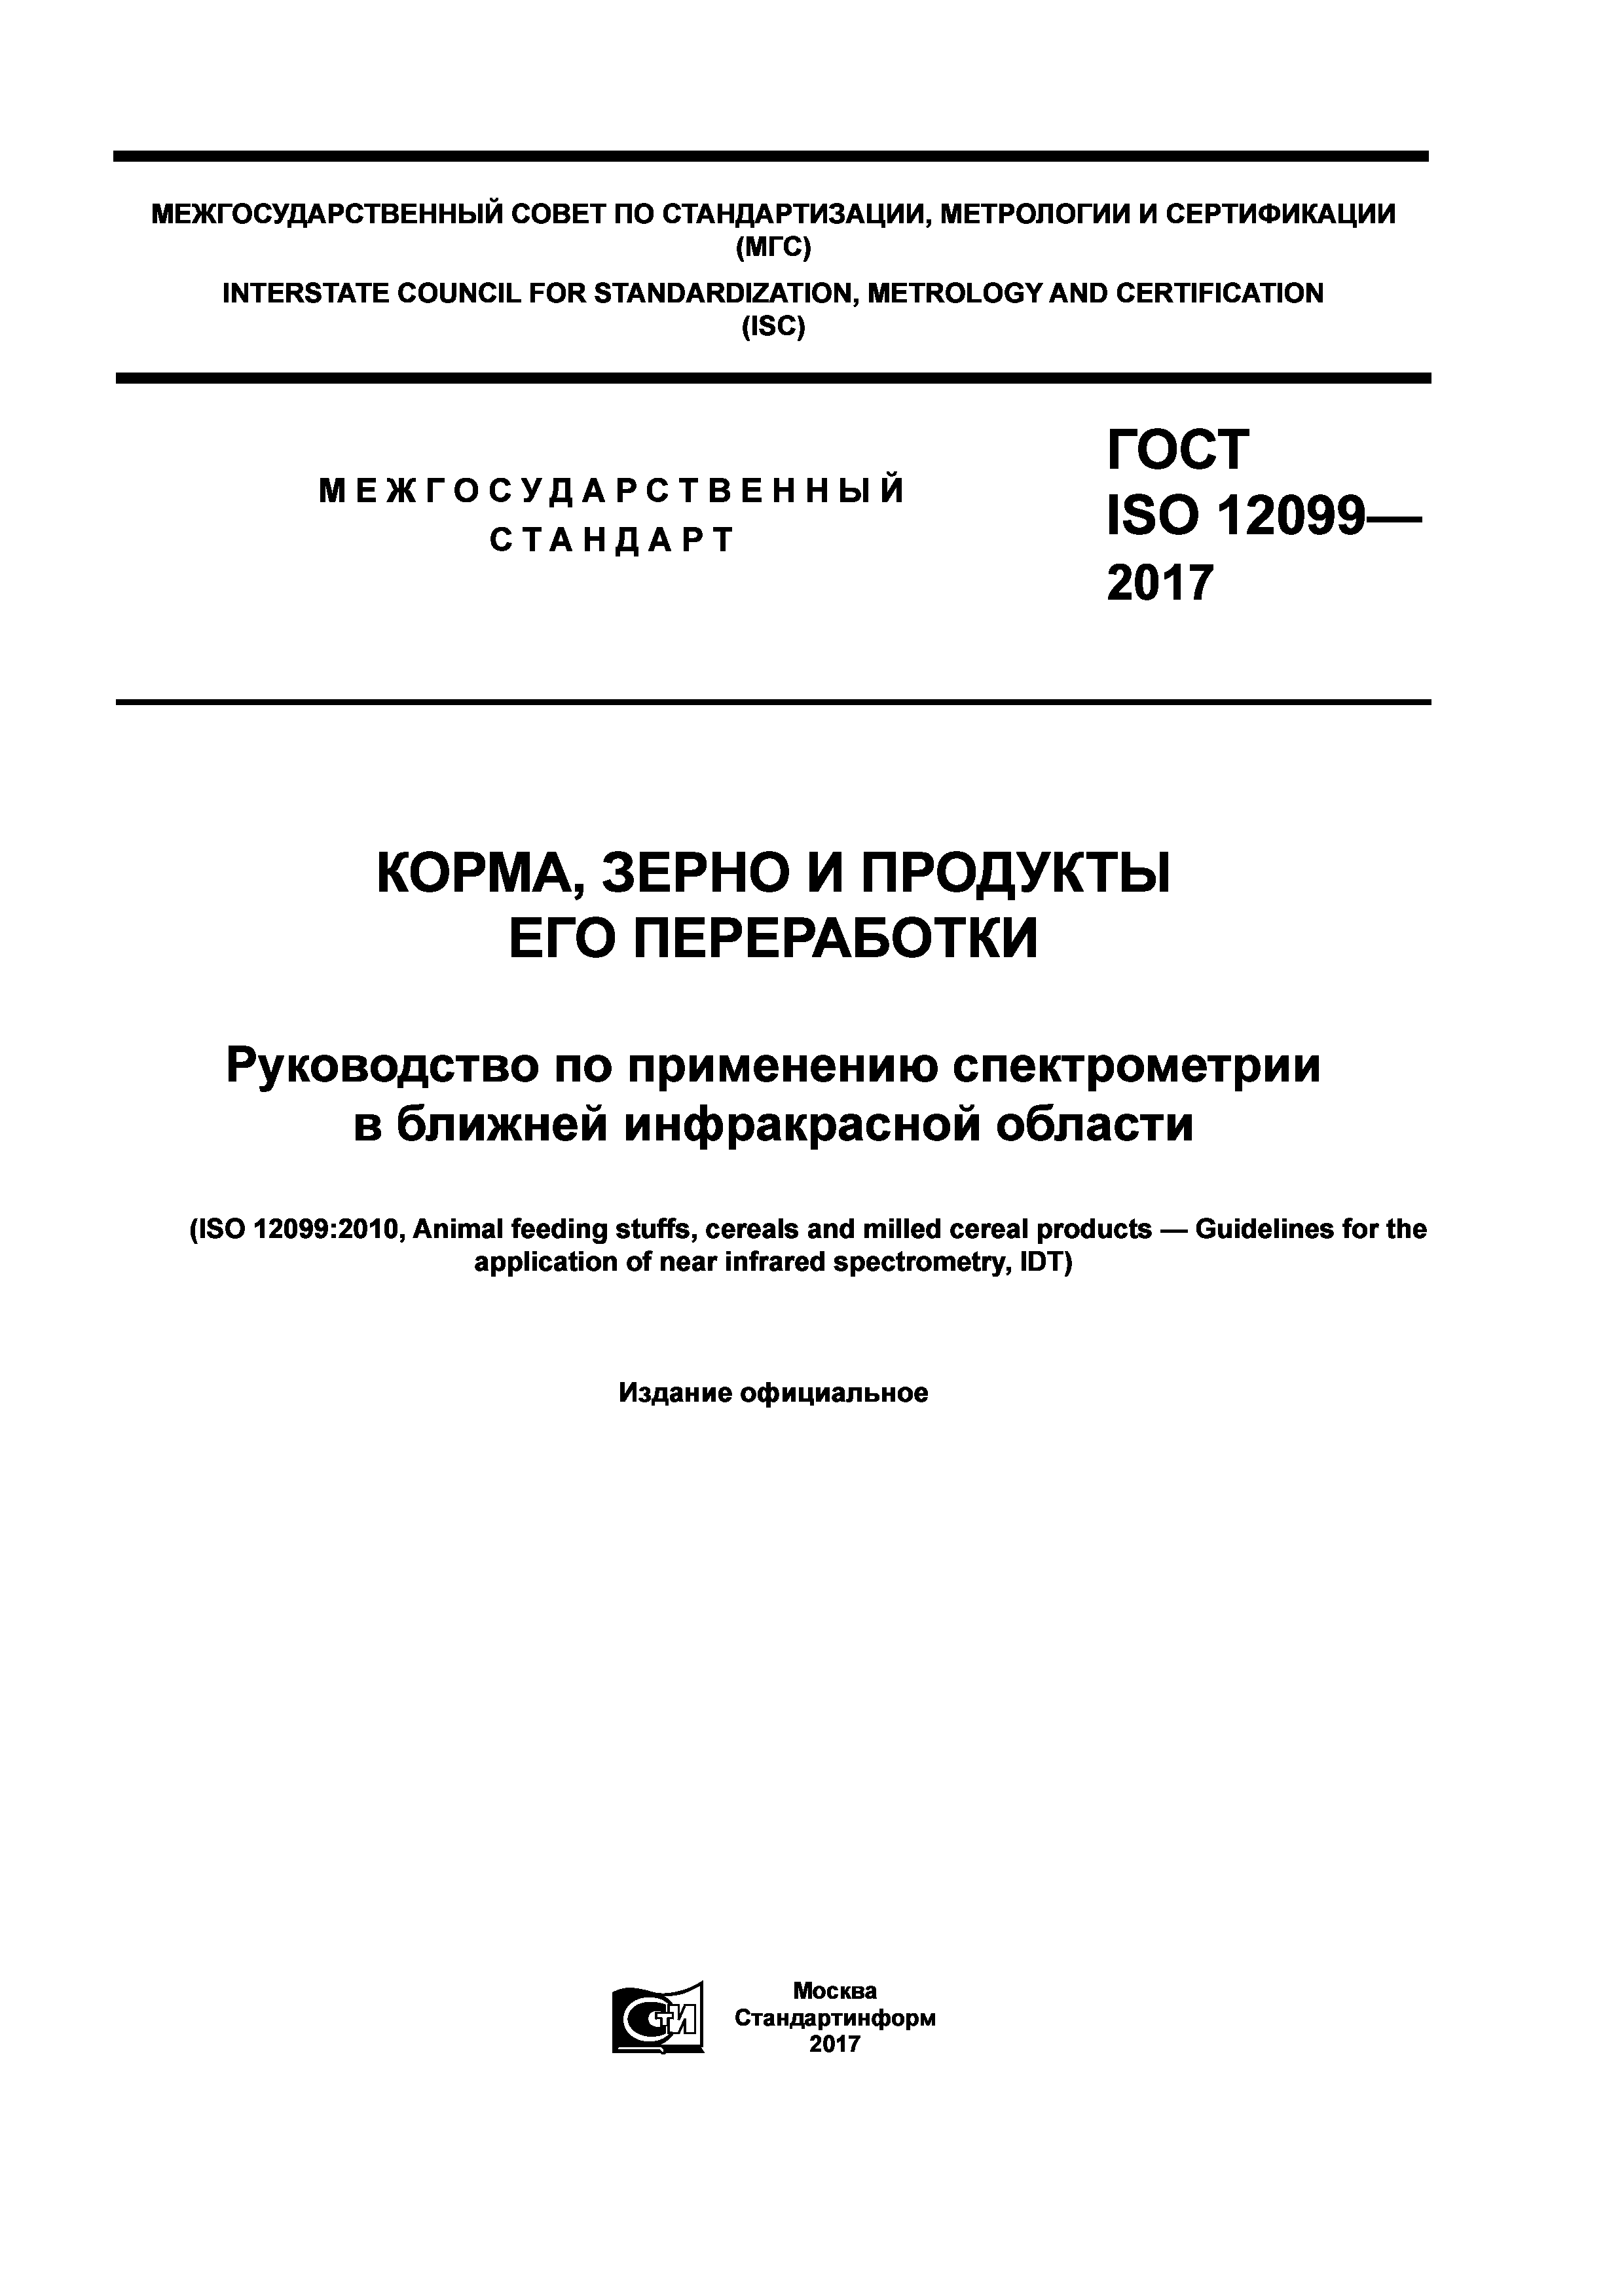 ГОСТ ISO 12099-2017